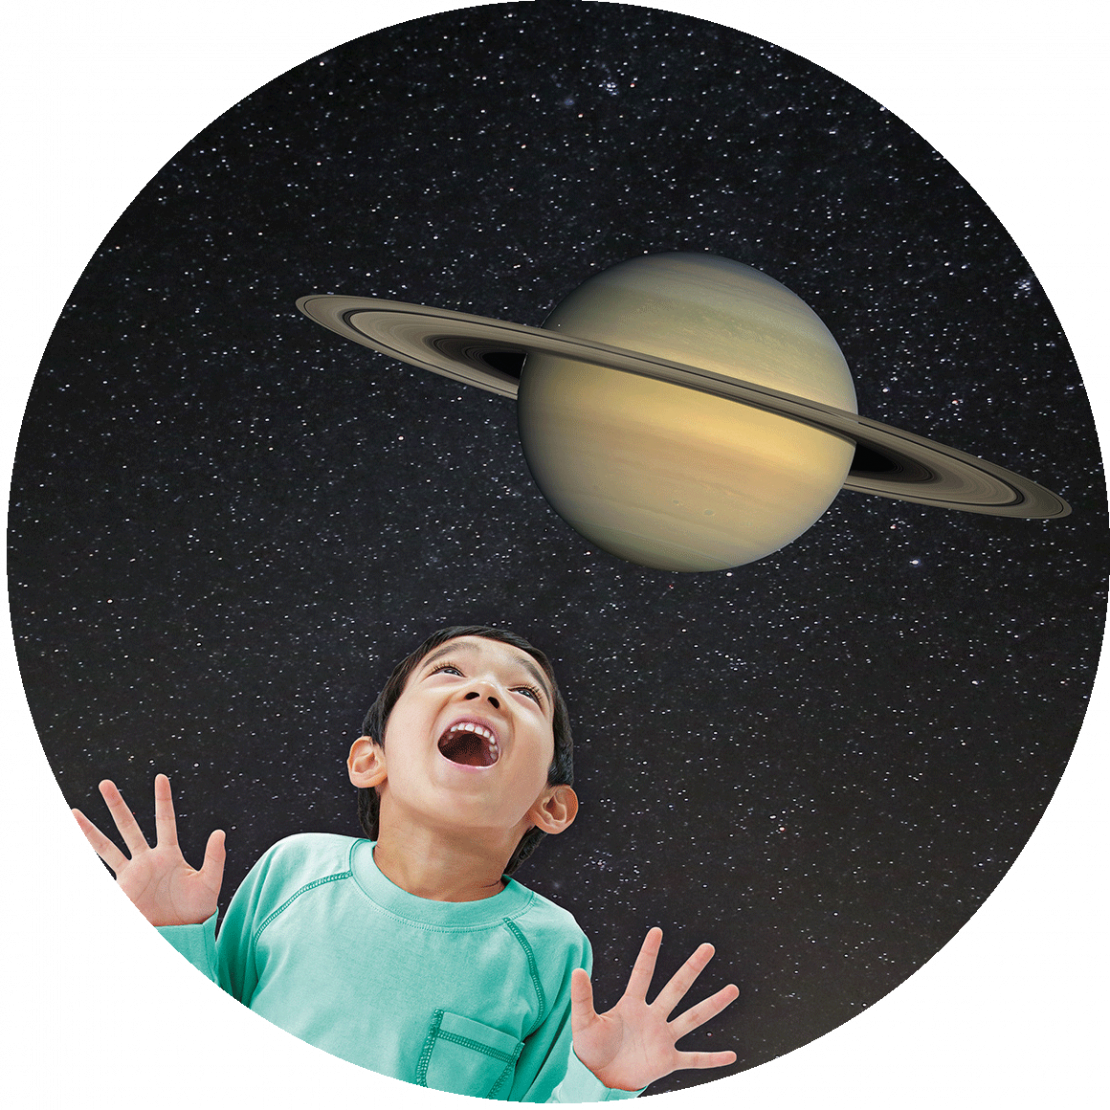 Junge mit Saturn